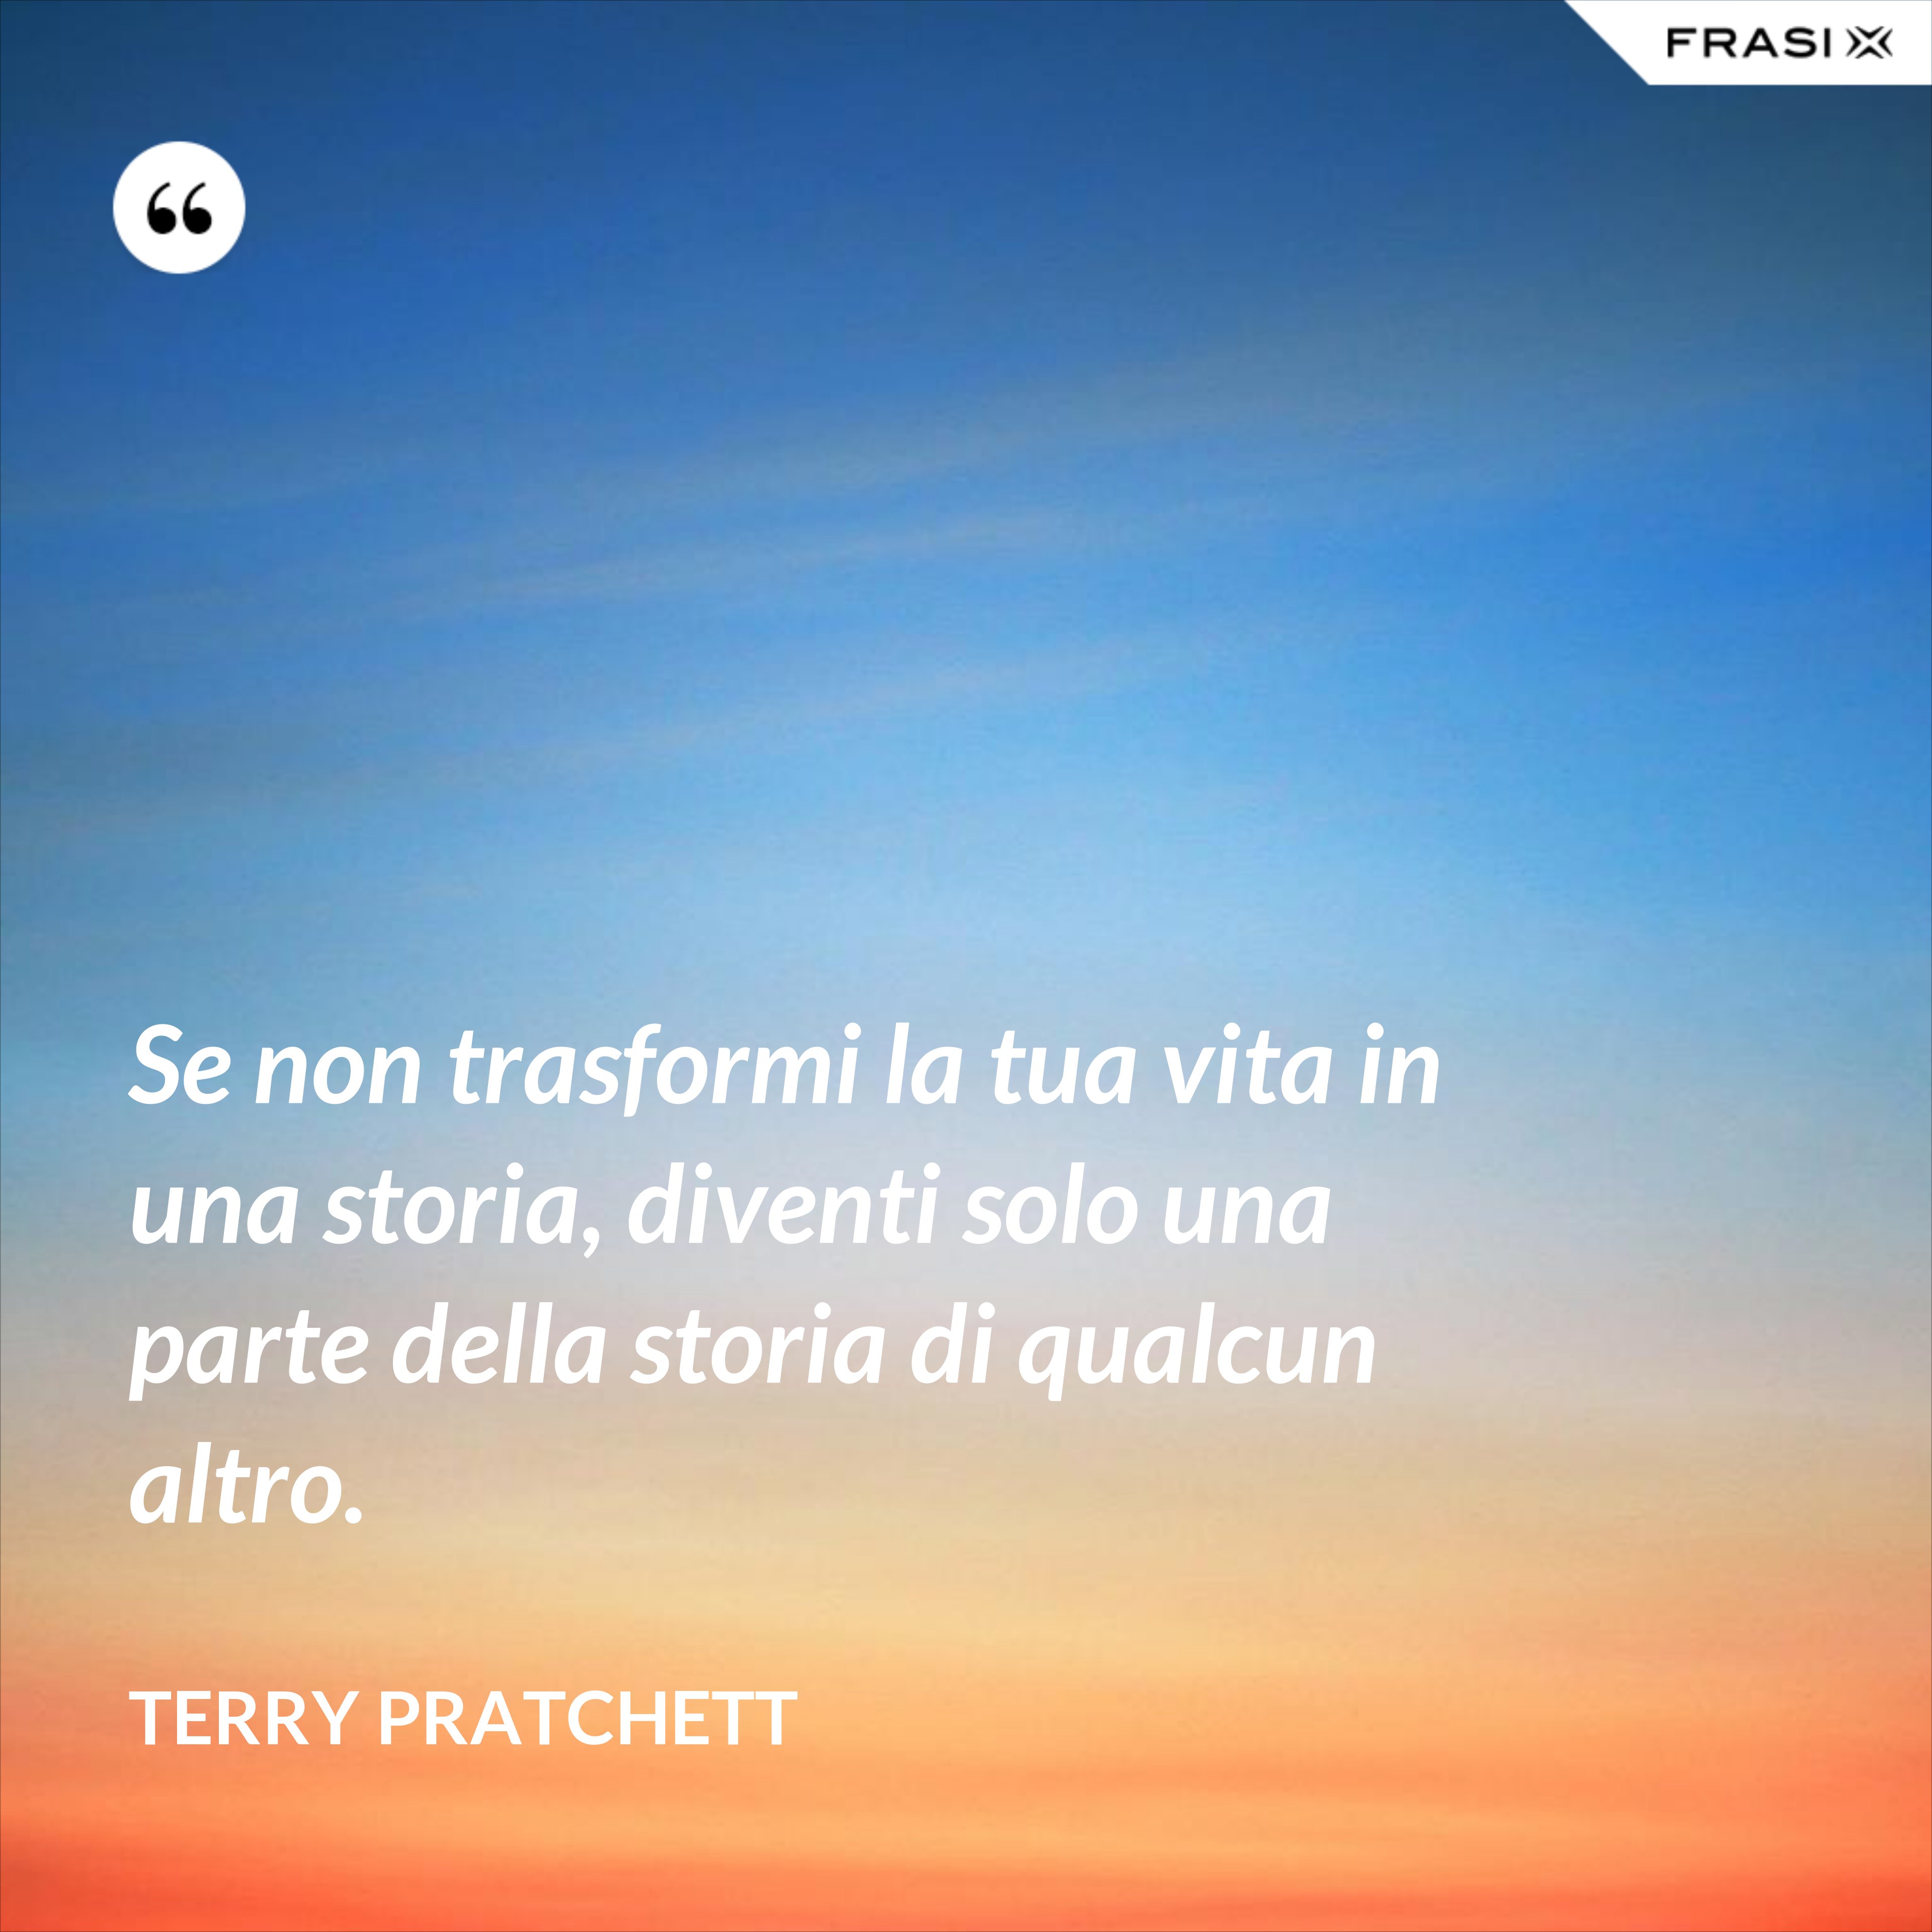 Se non trasformi la tua vita in una storia, diventi solo una parte della storia di qualcun altro. - Terry Pratchett